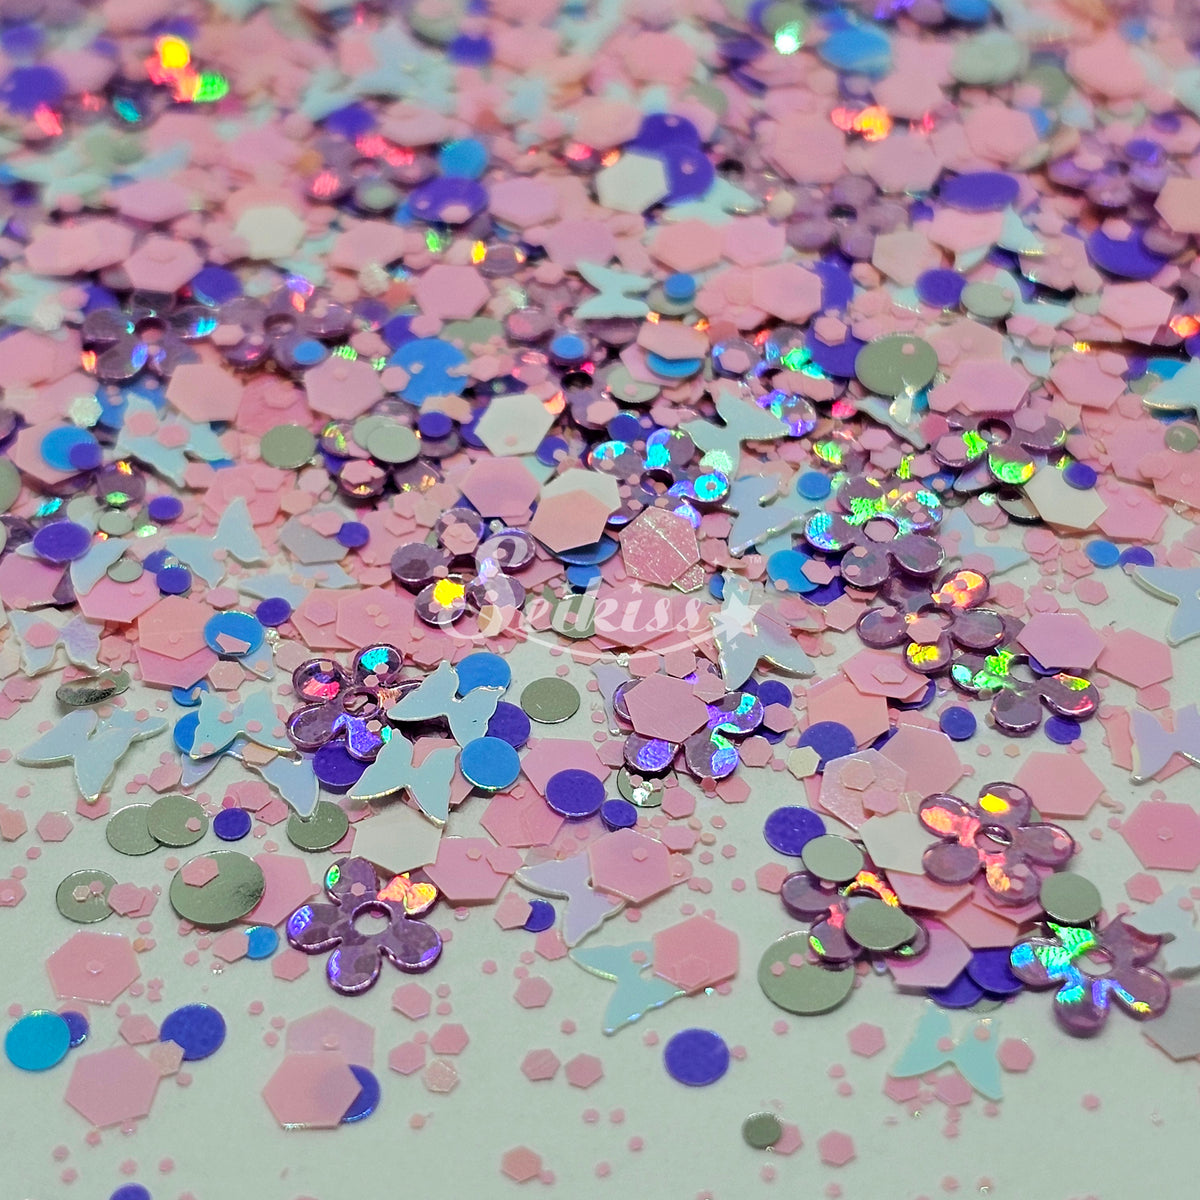 Anastasia Glitter Mix - Shape Glitter